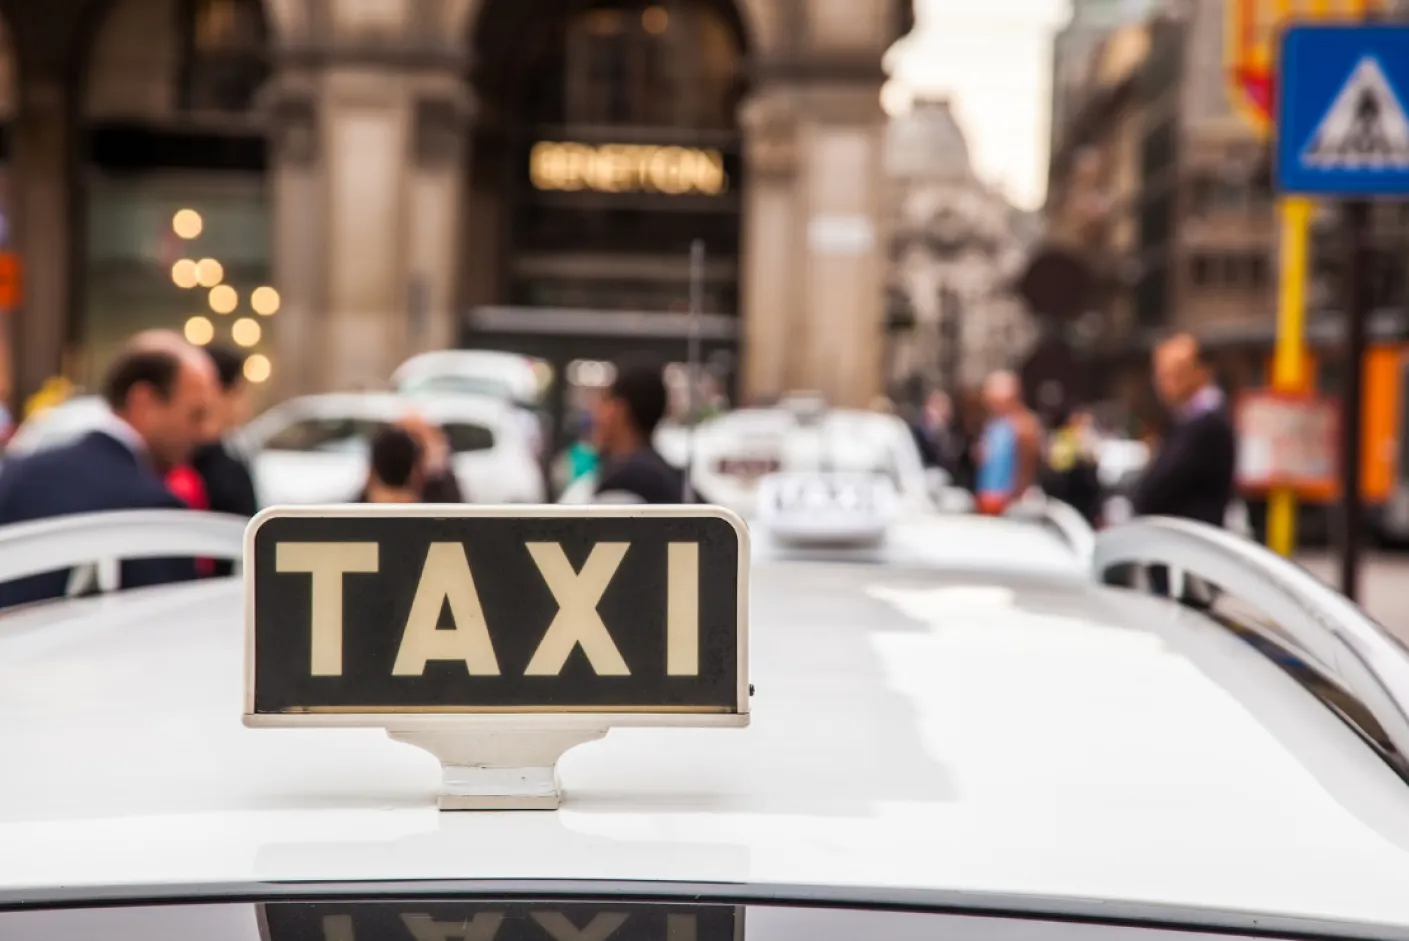 Examen taxi madrid : Aprende y practica para aprobar el examen de taxi en Madrid